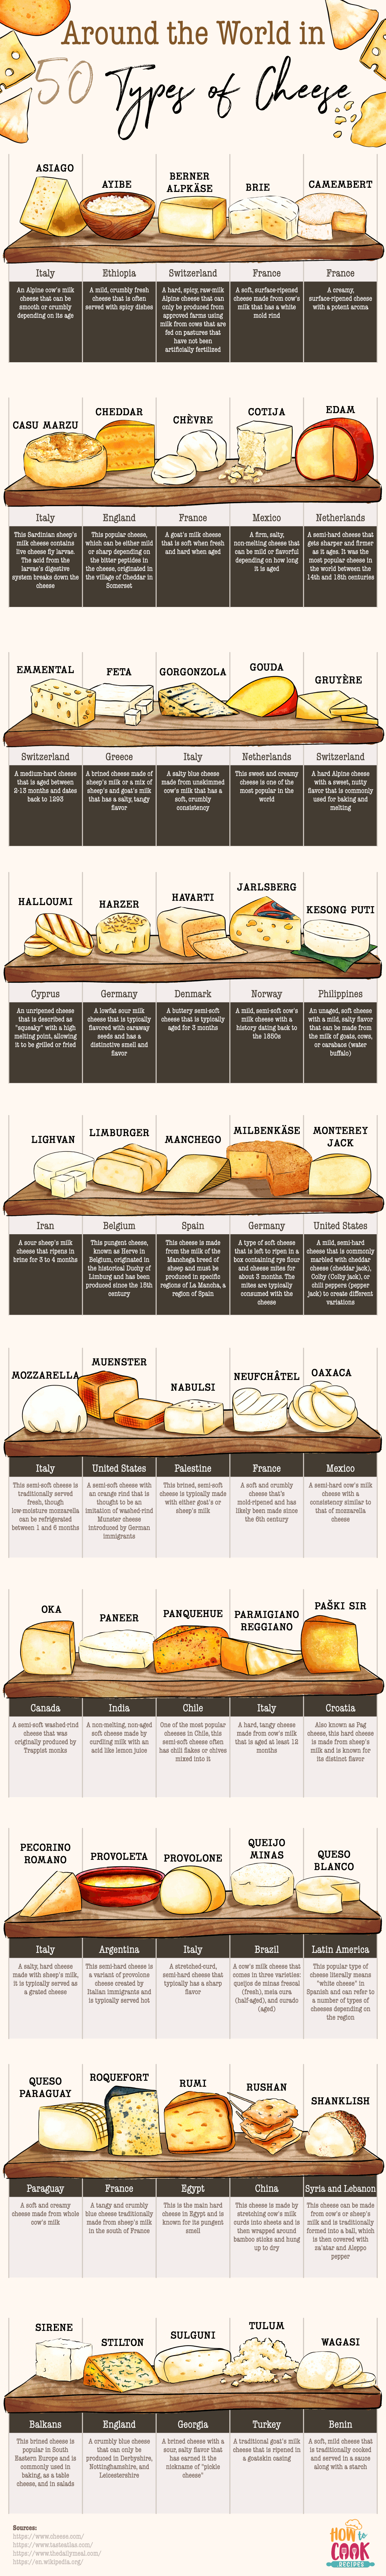 Druhy sýra po celem světě. 